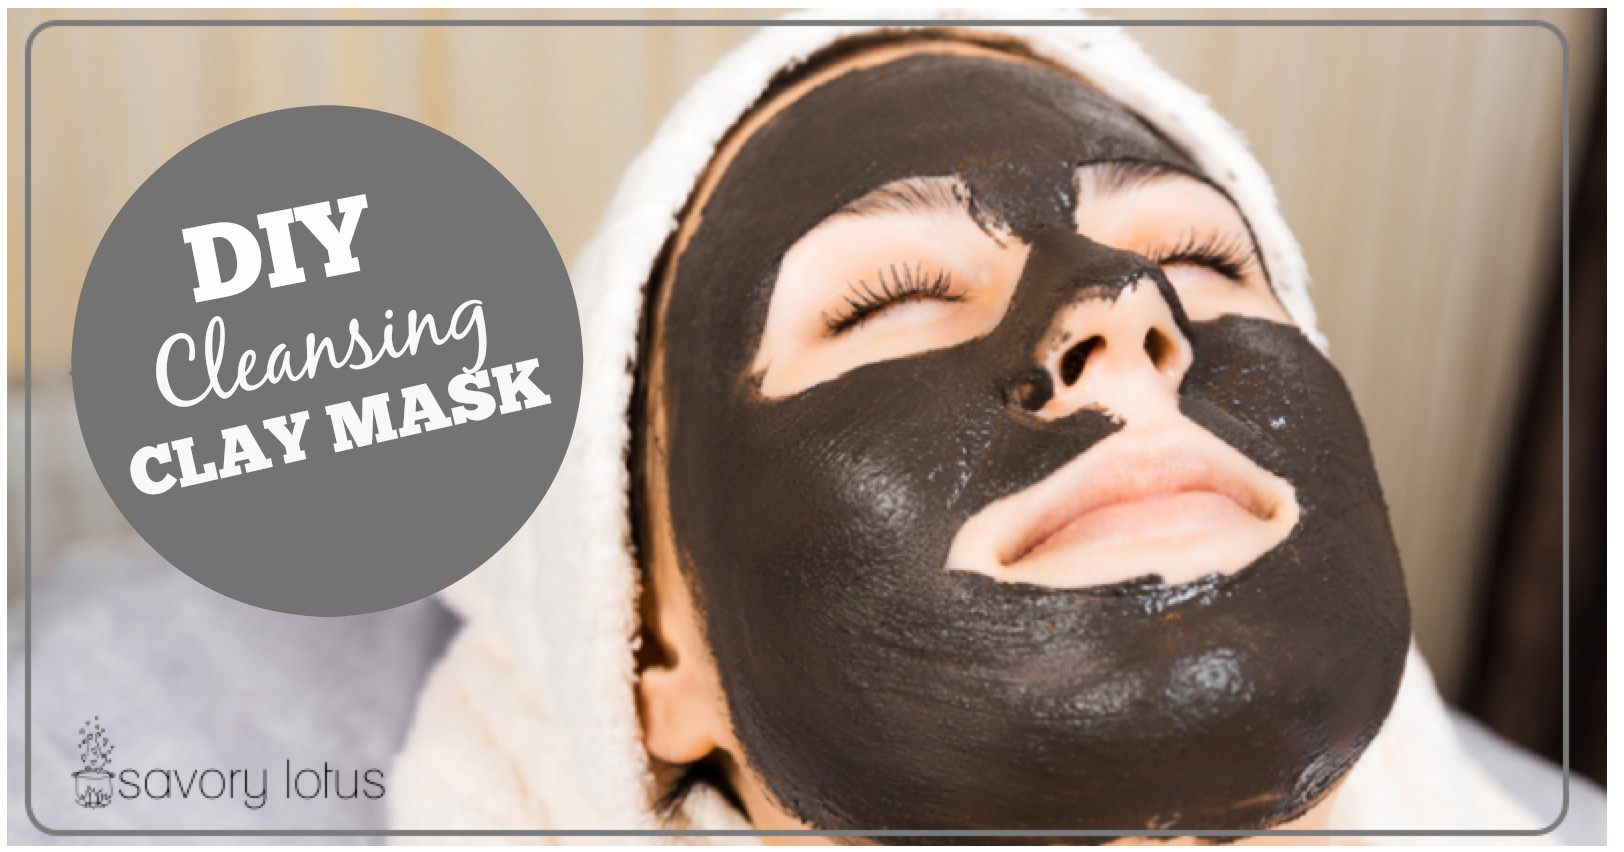 DIY Cleansing Face Mask
 DIY Cleansing Clay Mask Savory Lotus